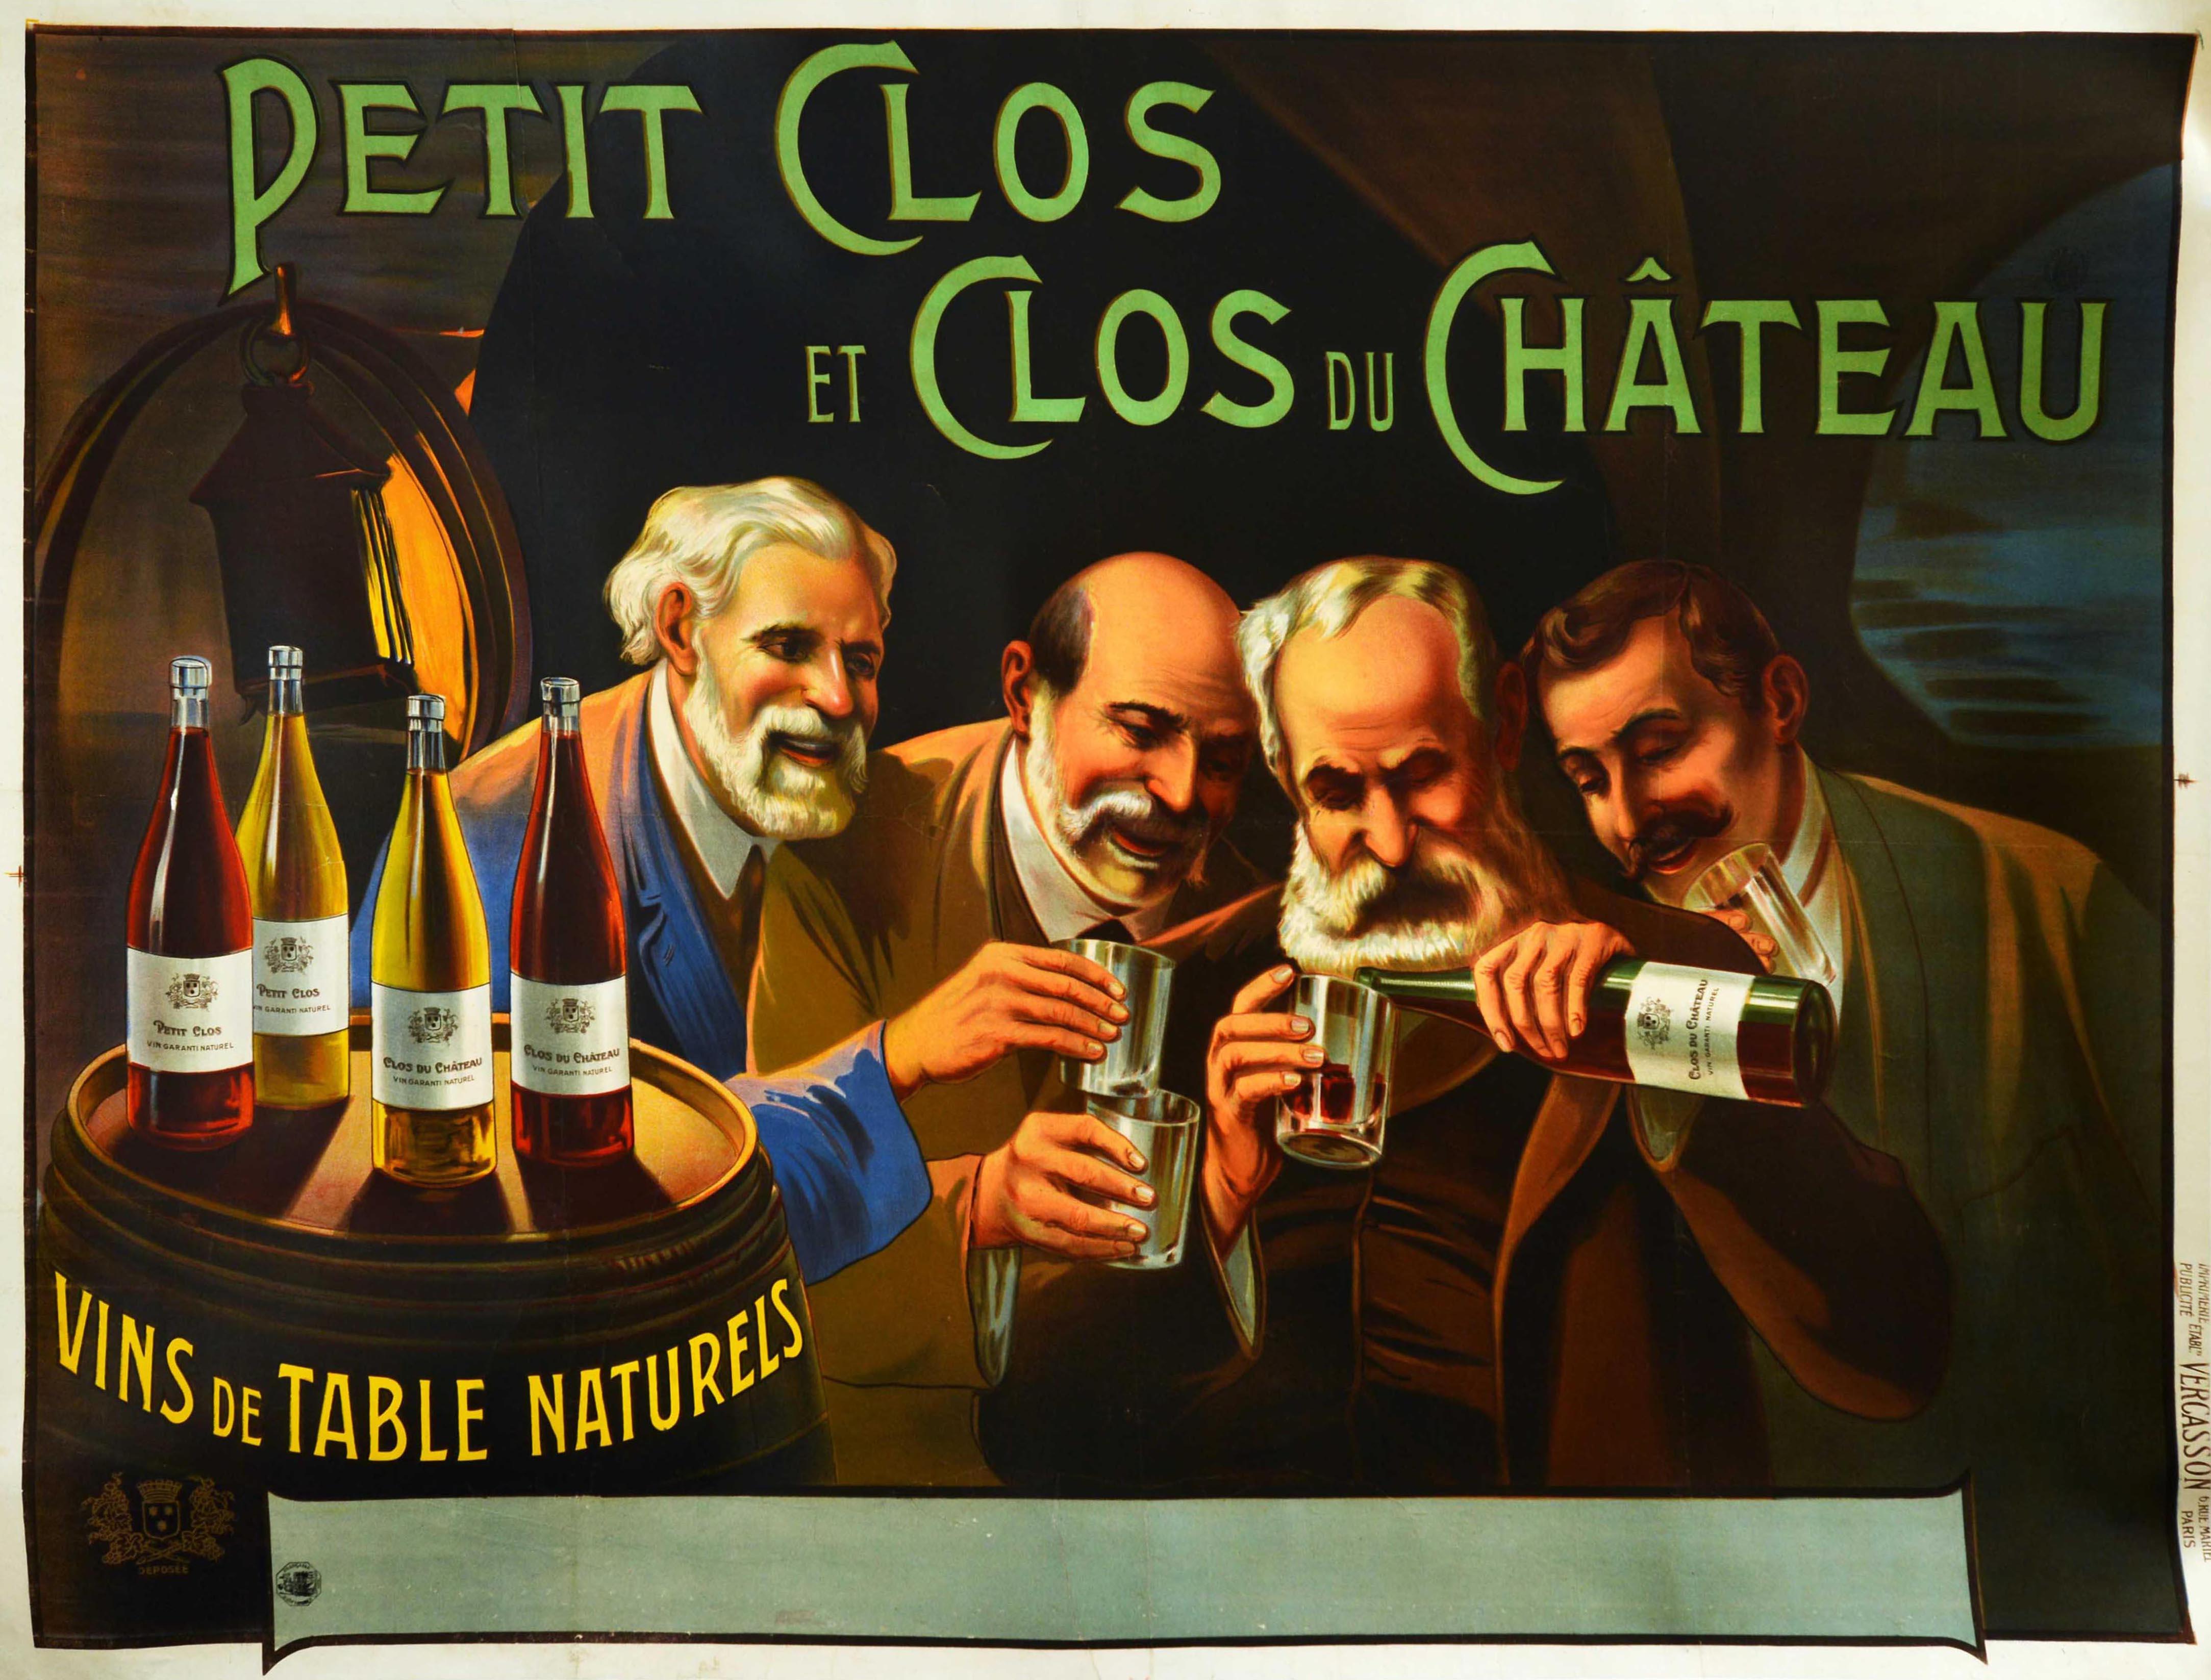 Originales antikes Getränke-Werbeplakat für die Weine Petit Clos und Clos du Chateau mit einer hellen und farbenfrohen Illustration von vier Männern mit Schnurrbärten in einem von einer Laterne beleuchteten Weinkeller, die lächelnd Gläser in der